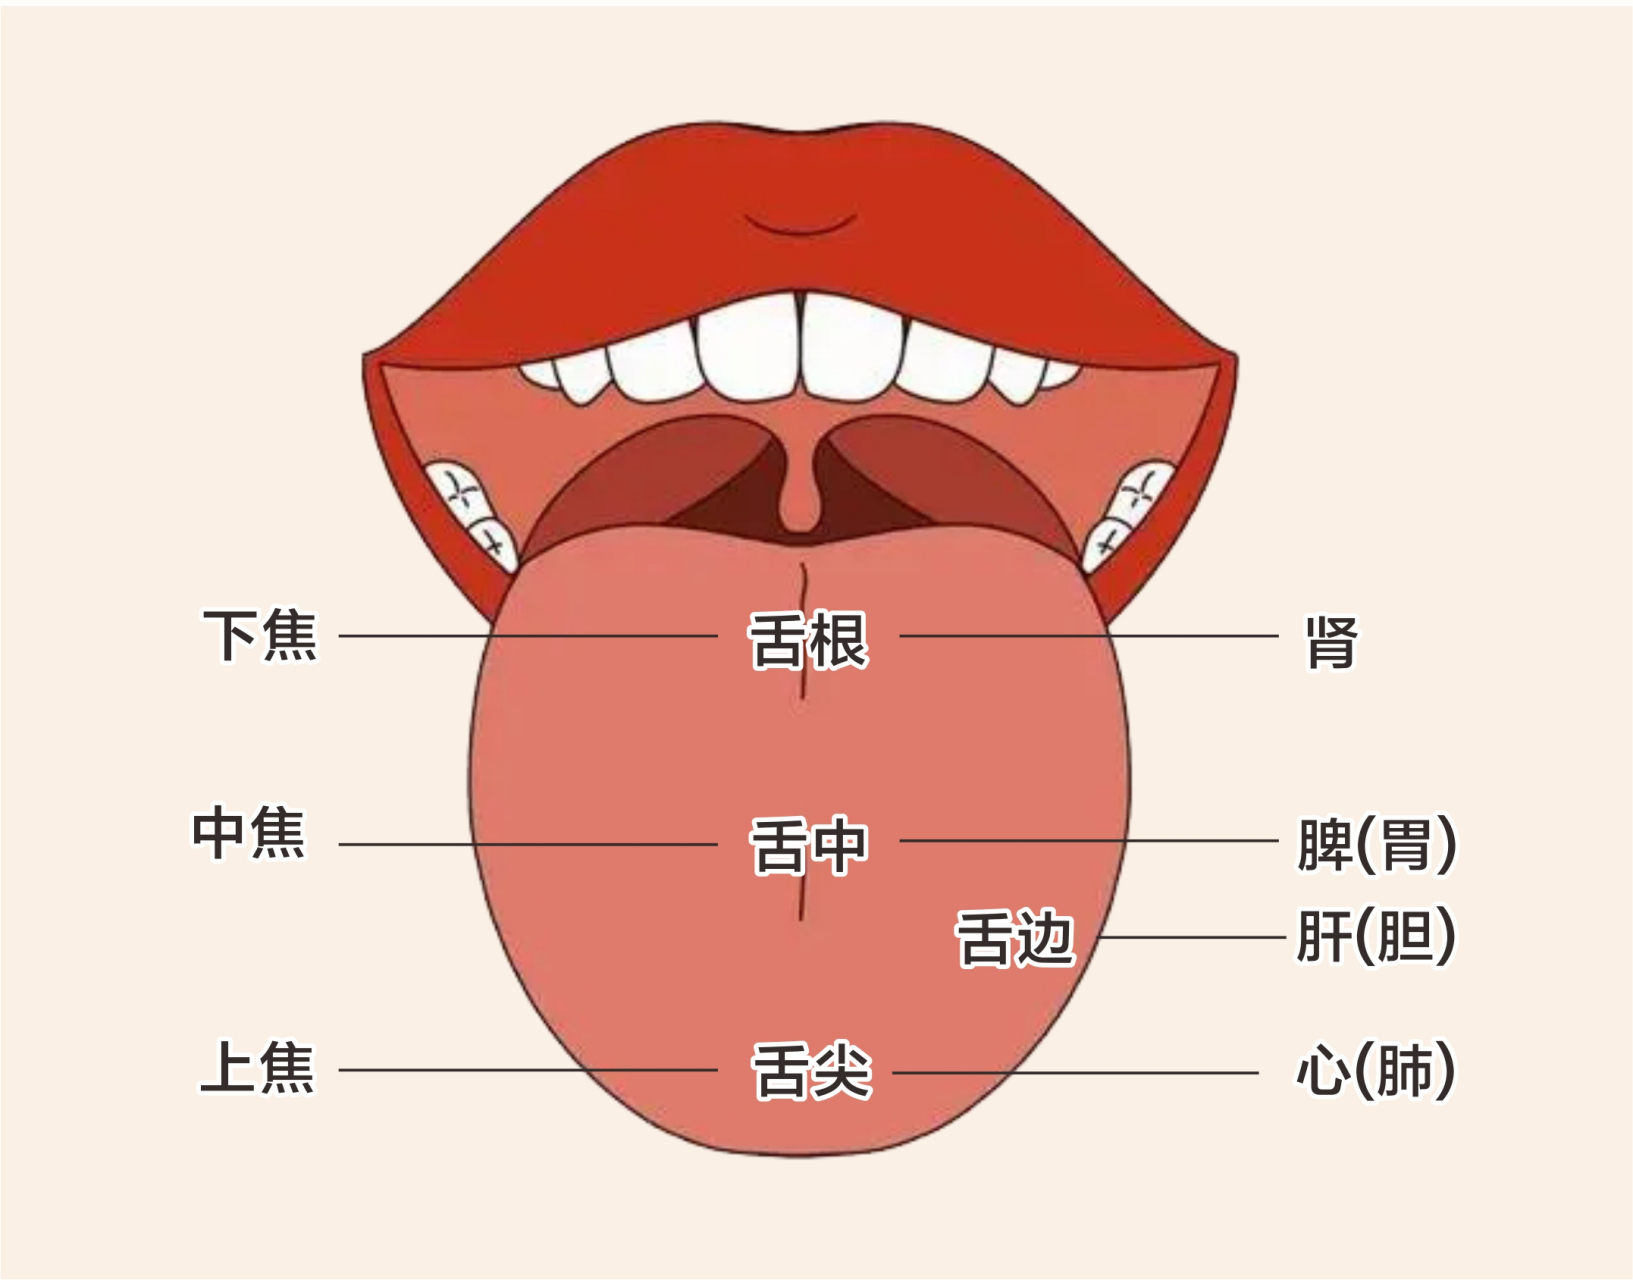 舌诊是中医的金标准,中医诊病讲究望闻问切,其中舌诊最为客观